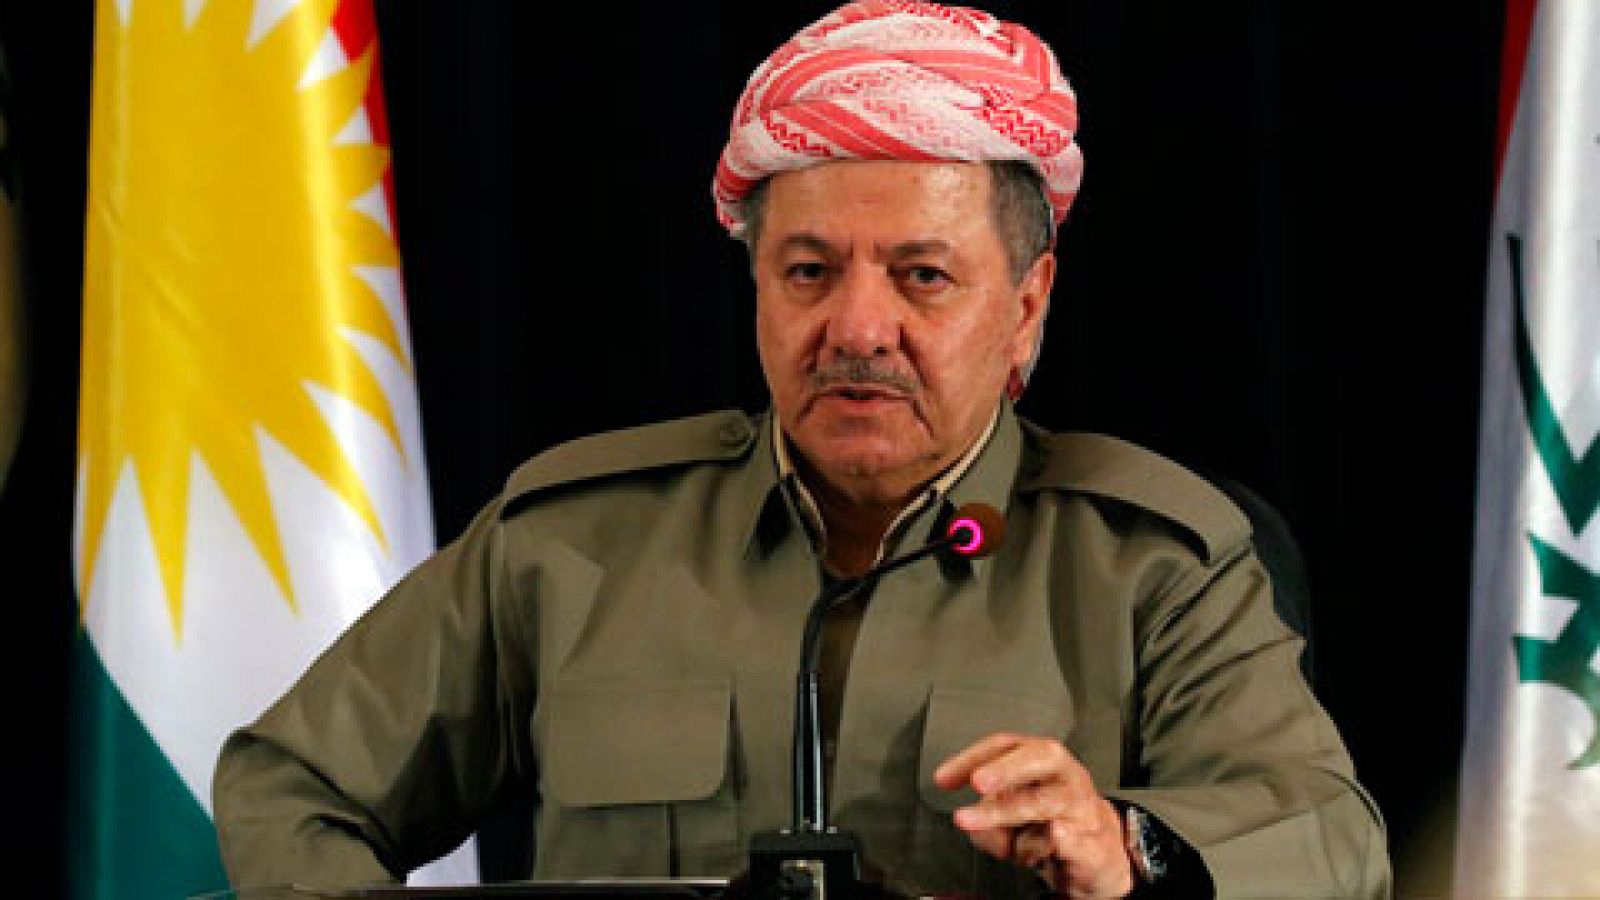 El Kurdistán iraquí decidirá en referéndum su independencia, a lo que se opone el gobierno de Irak